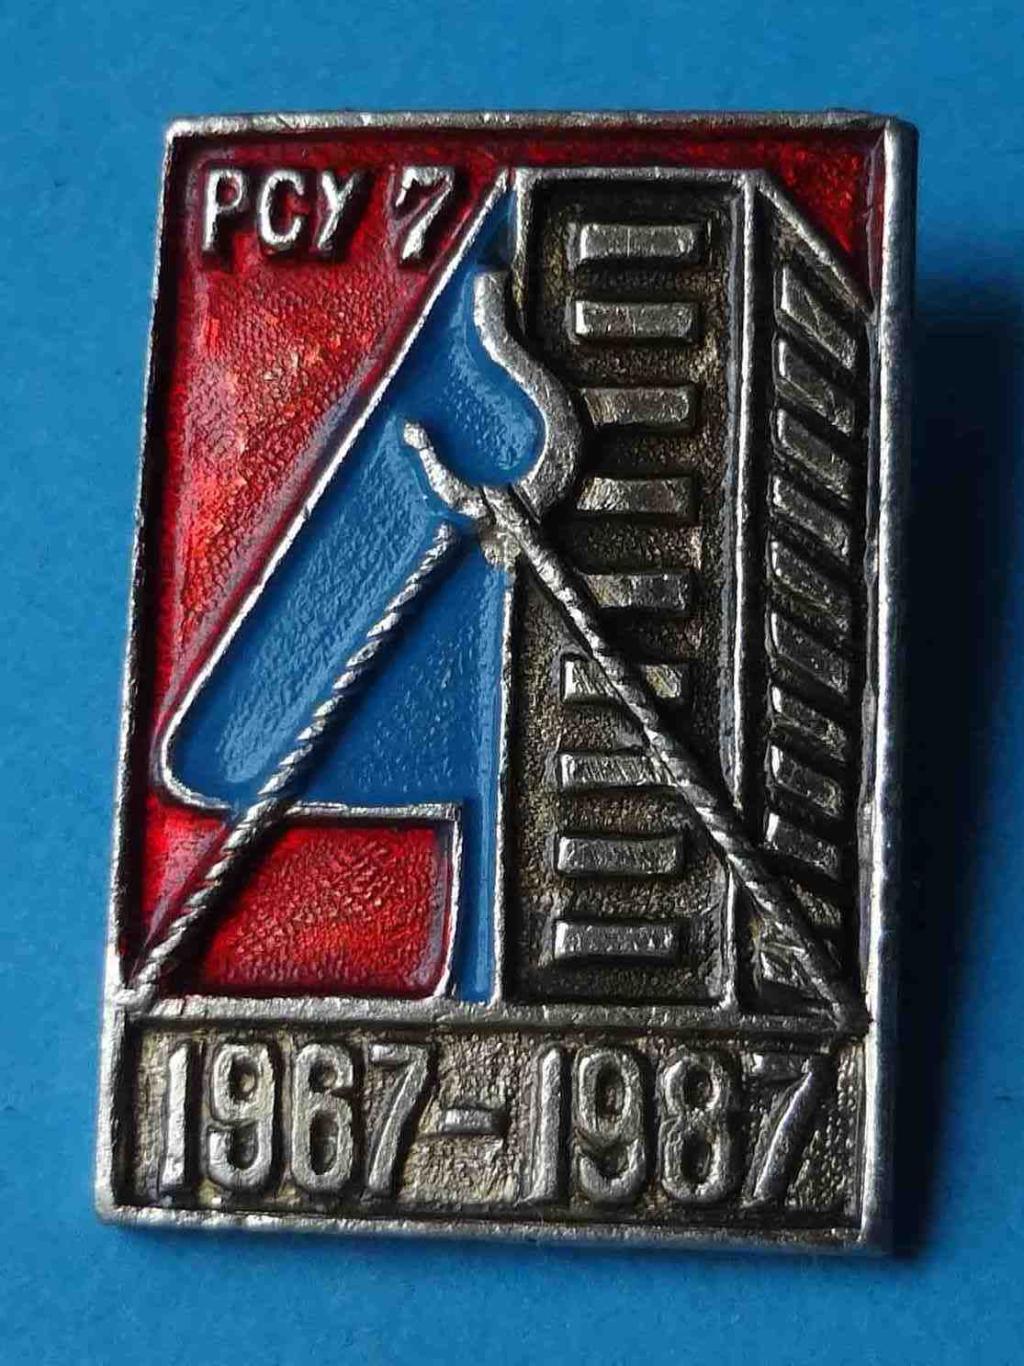 20 лет РСУ 7 1967-1987 Одесское ремонтно-строительное управление №7